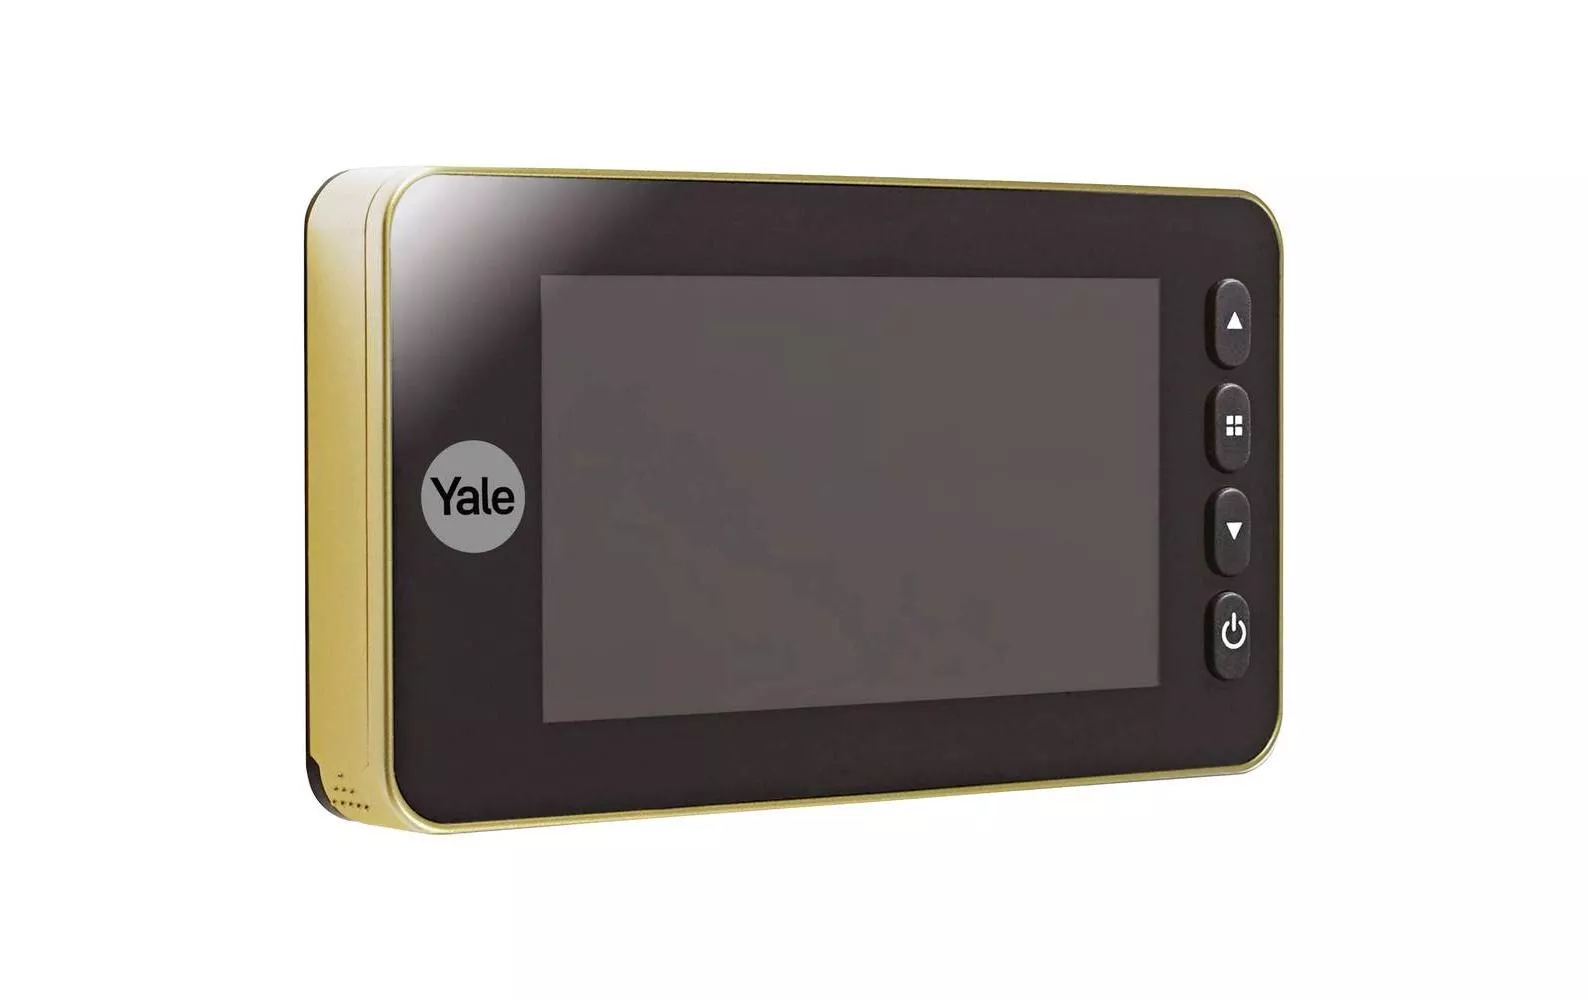 Visore digitale Yale DDV 5800 con display da 4,3\", ottone